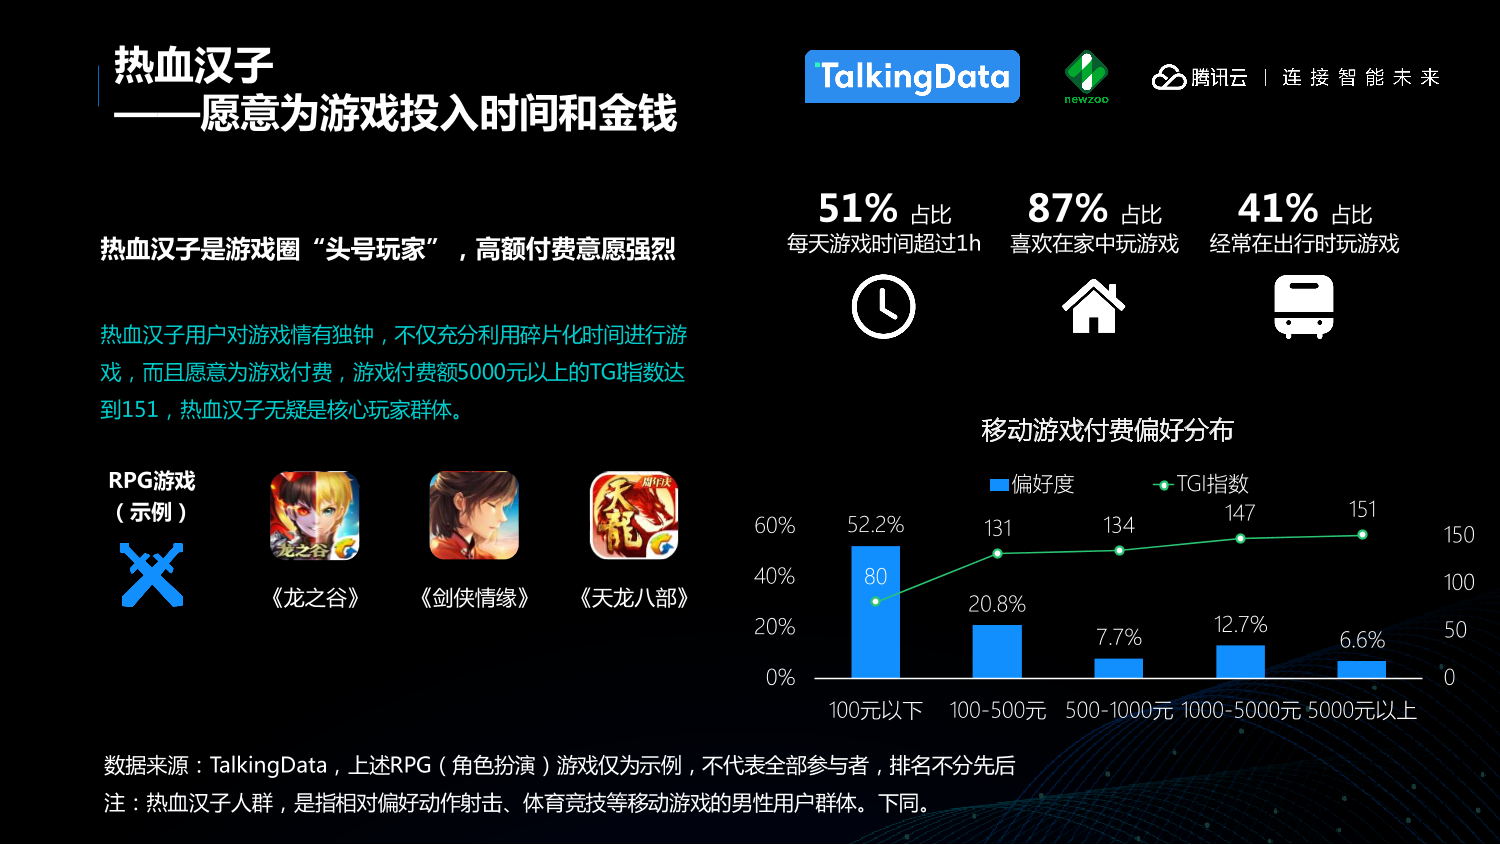 中国移动游戏行业趋势报告_1527559577212-17